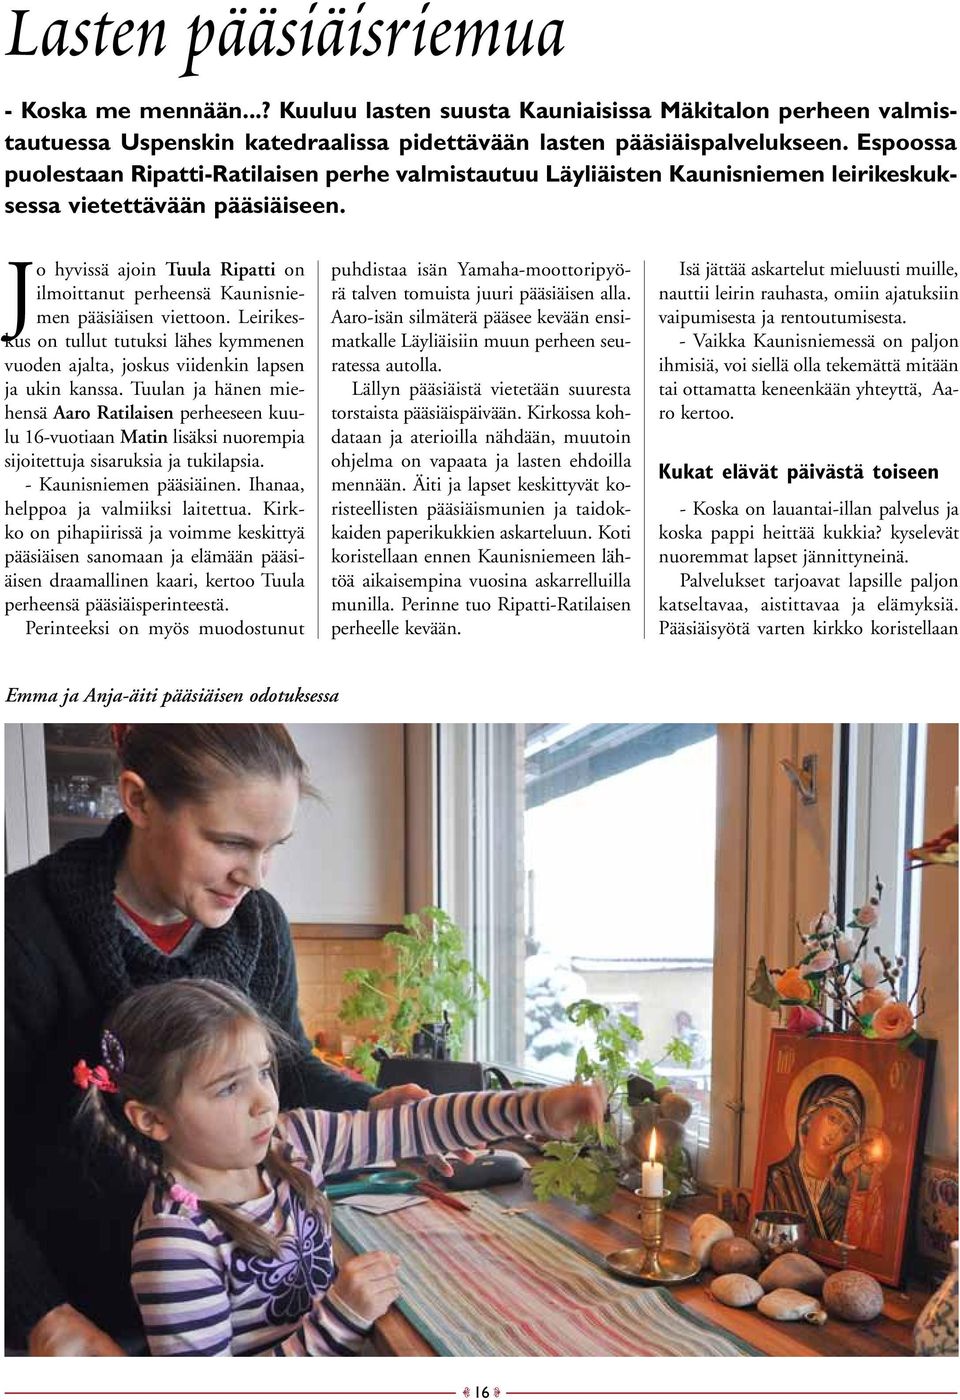 Jo hyvissä ajoin Tuula Ripatti on ilmoittanut perheensä Kaunisniemen pääsiäisen viettoon. Leirikeskus on tullut tutuksi lähes kymmenen vuoden ajalta, joskus viidenkin lapsen ja ukin kanssa.